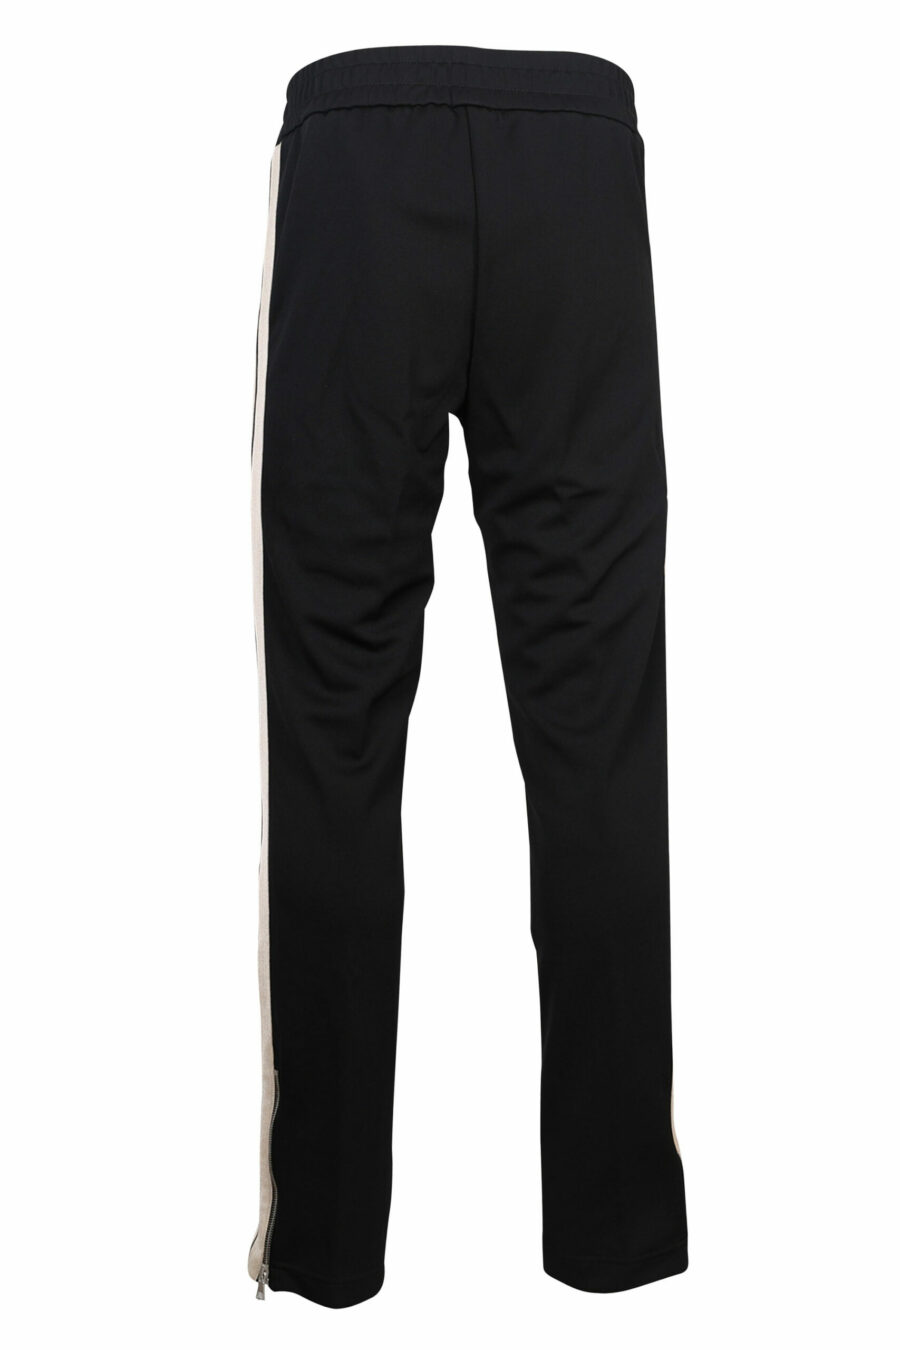 Pantalón de chándal negro con franjas blancas laterales - 8057151109214 2 scaled